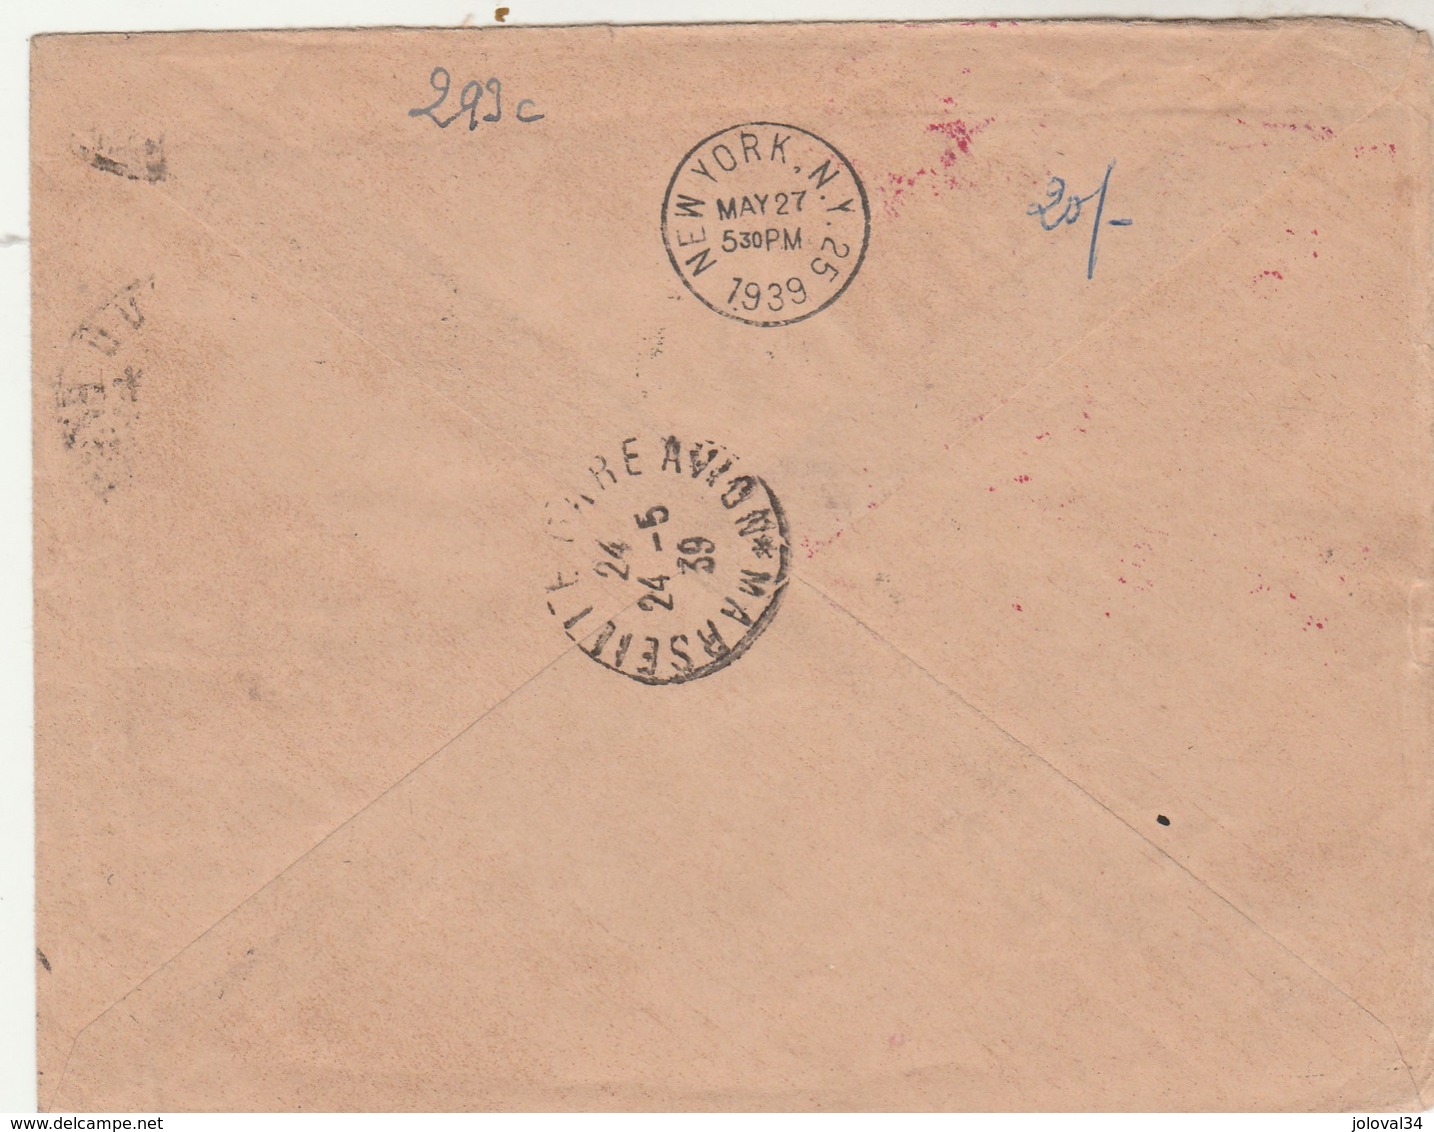 Poste Aérienne 1 Er Service Postal Aérien France Etats Unis 24/5/1939 Lyon Villeurbanne Via Marseille New York - 1927-1959 Storia Postale